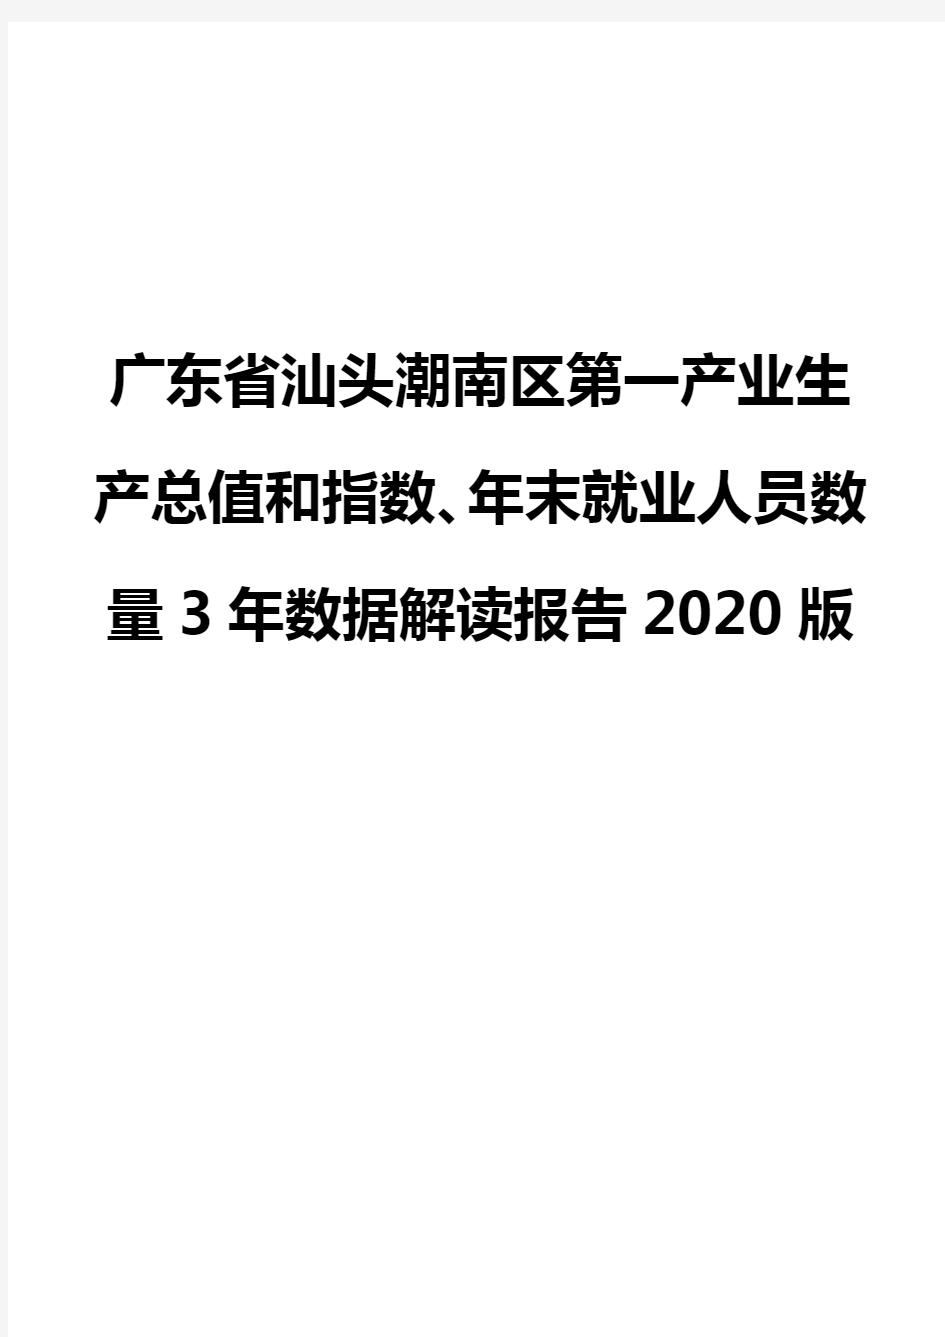 广东省汕头潮南区第一产业生产总值和指数、年末就业人员数量3年数据解读报告2020版